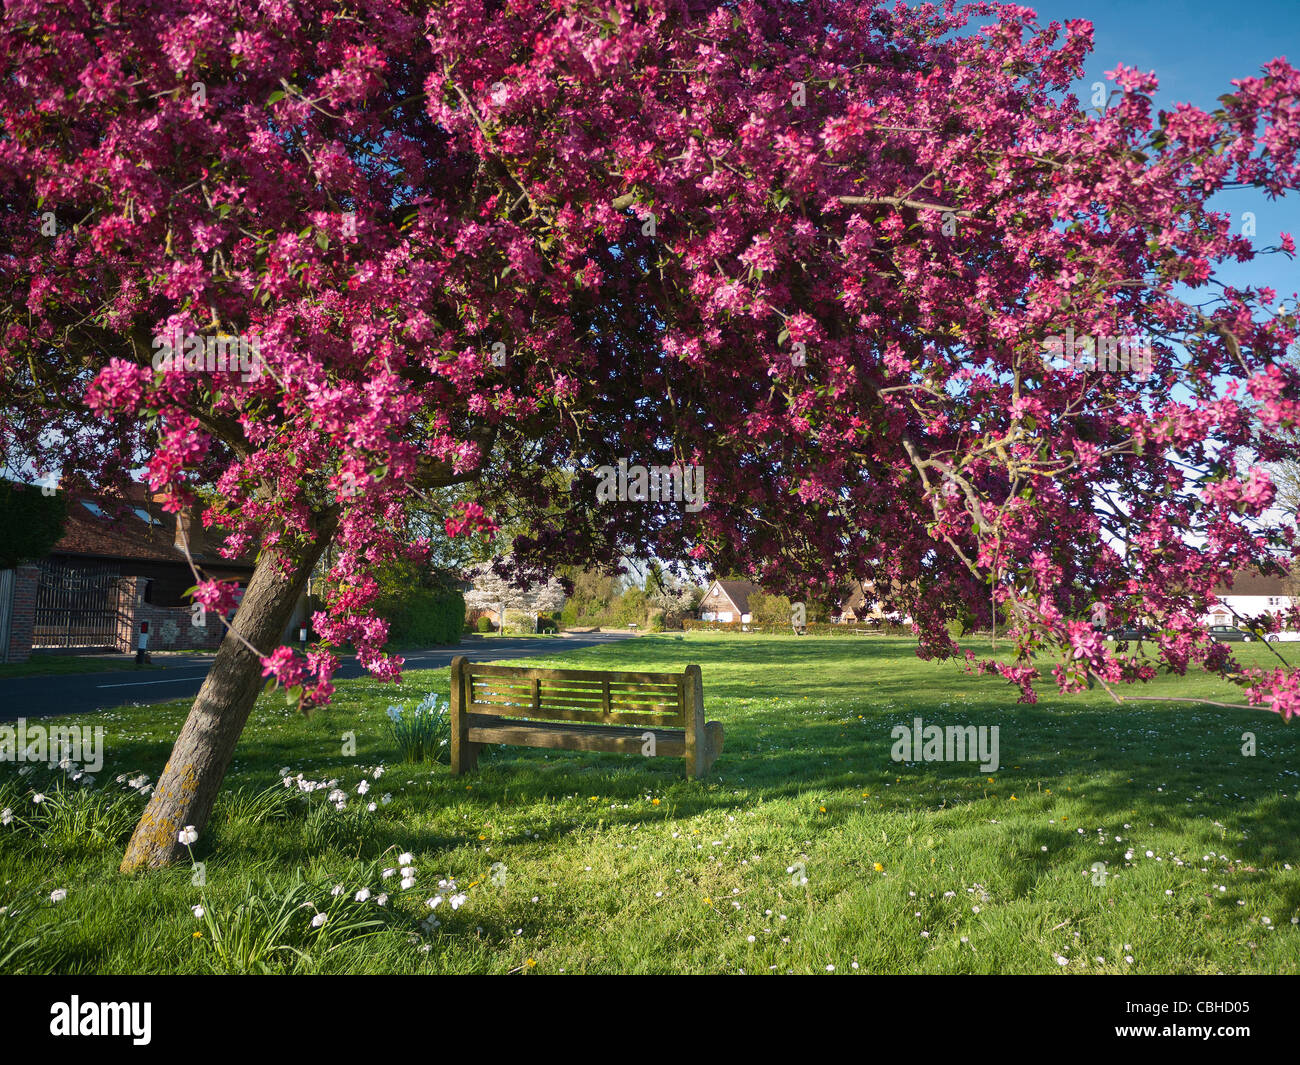 BANC DE CERISIER EN FLEUR RIPLEY SEND Village vert et printemps cerisier en fleur charming banc public à Send Ripley Surrey Royaume-Uni Banque D'Images